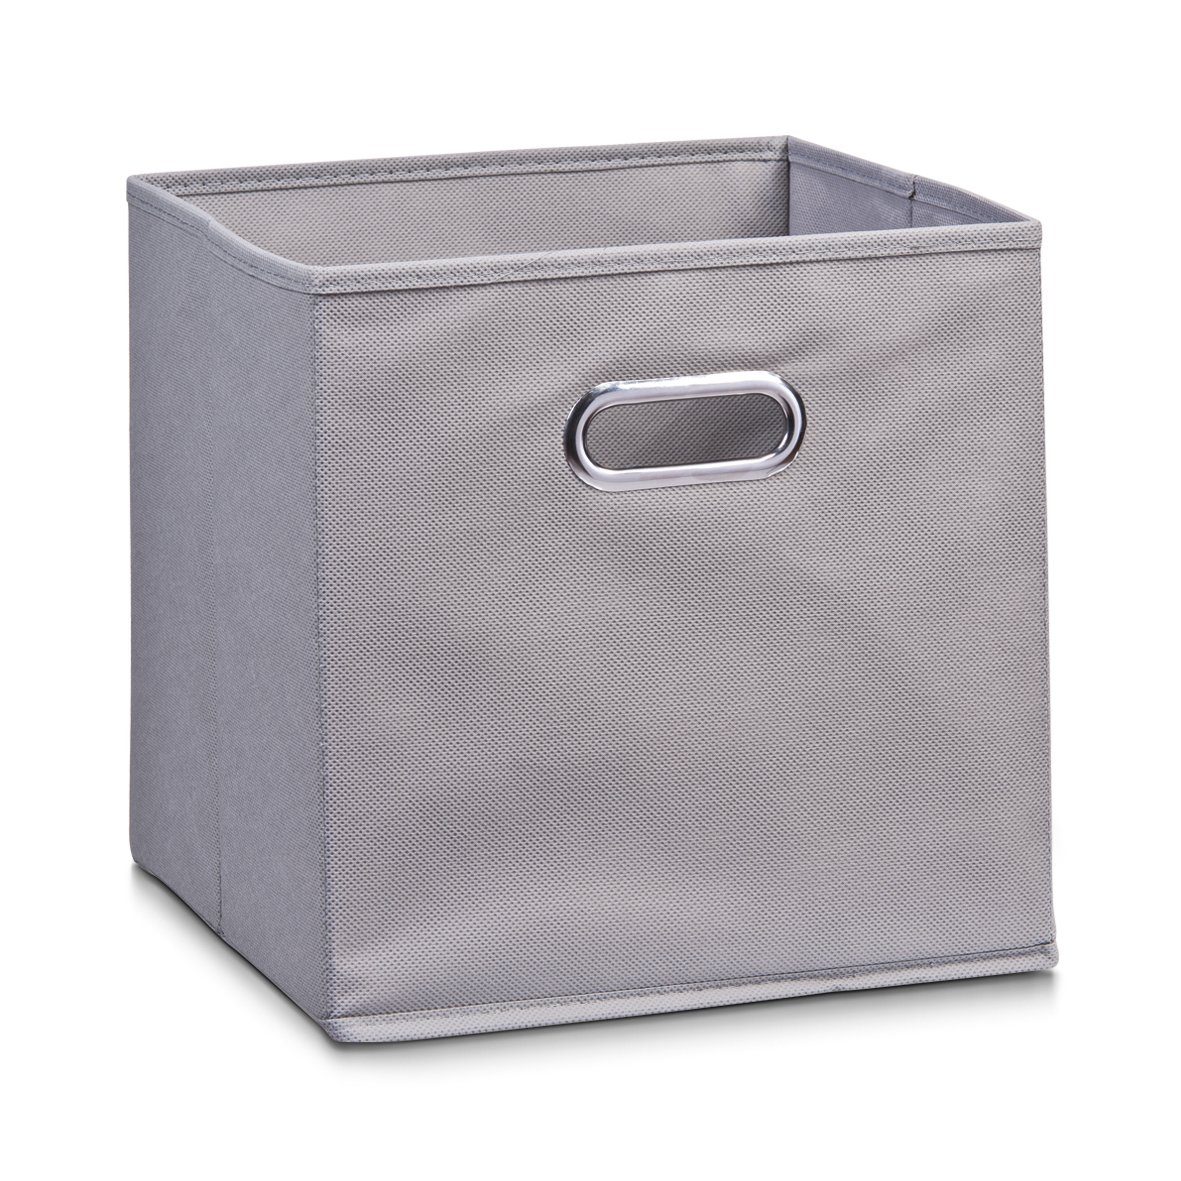 Zeller Present Aufbewahrungskorb Aufbewahrungsbox, Vlies, grau, 28 x 28 x 28 cm